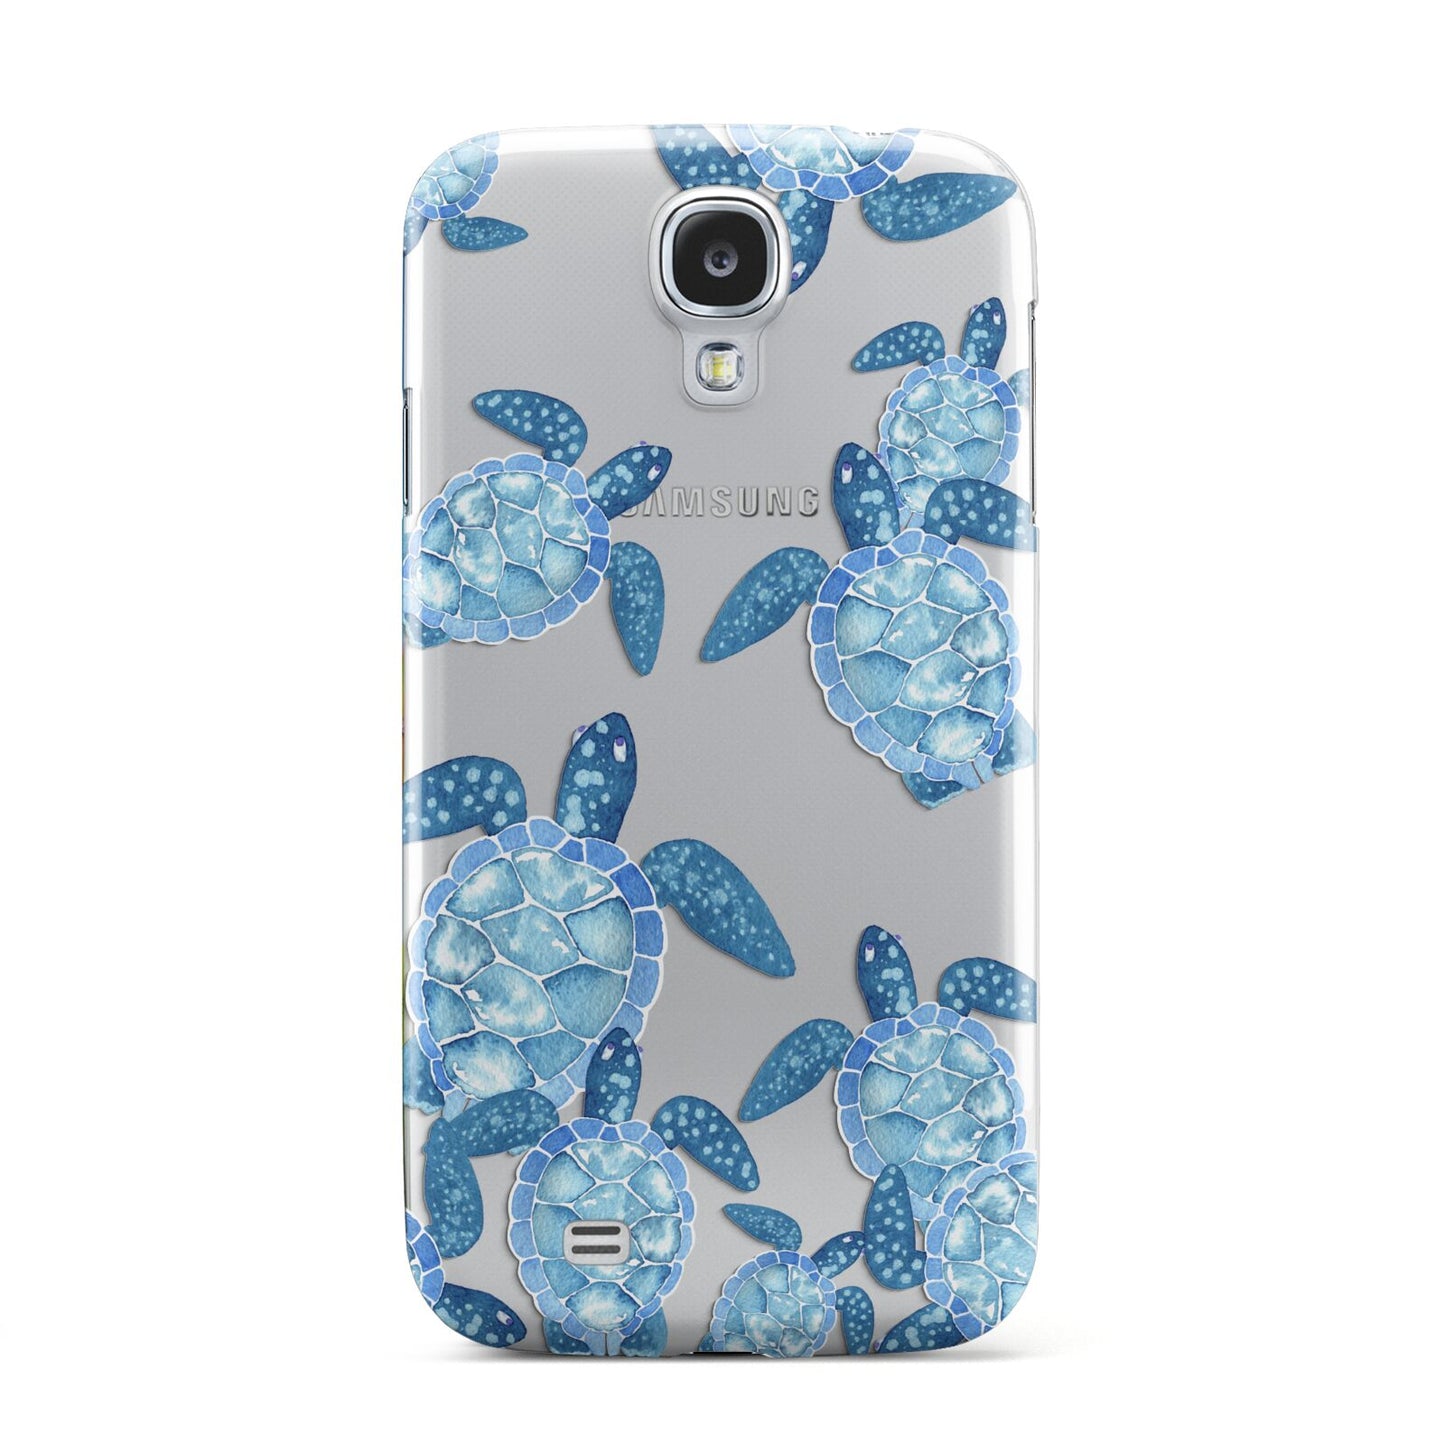 Turtle Samsung Galaxy S4 Case